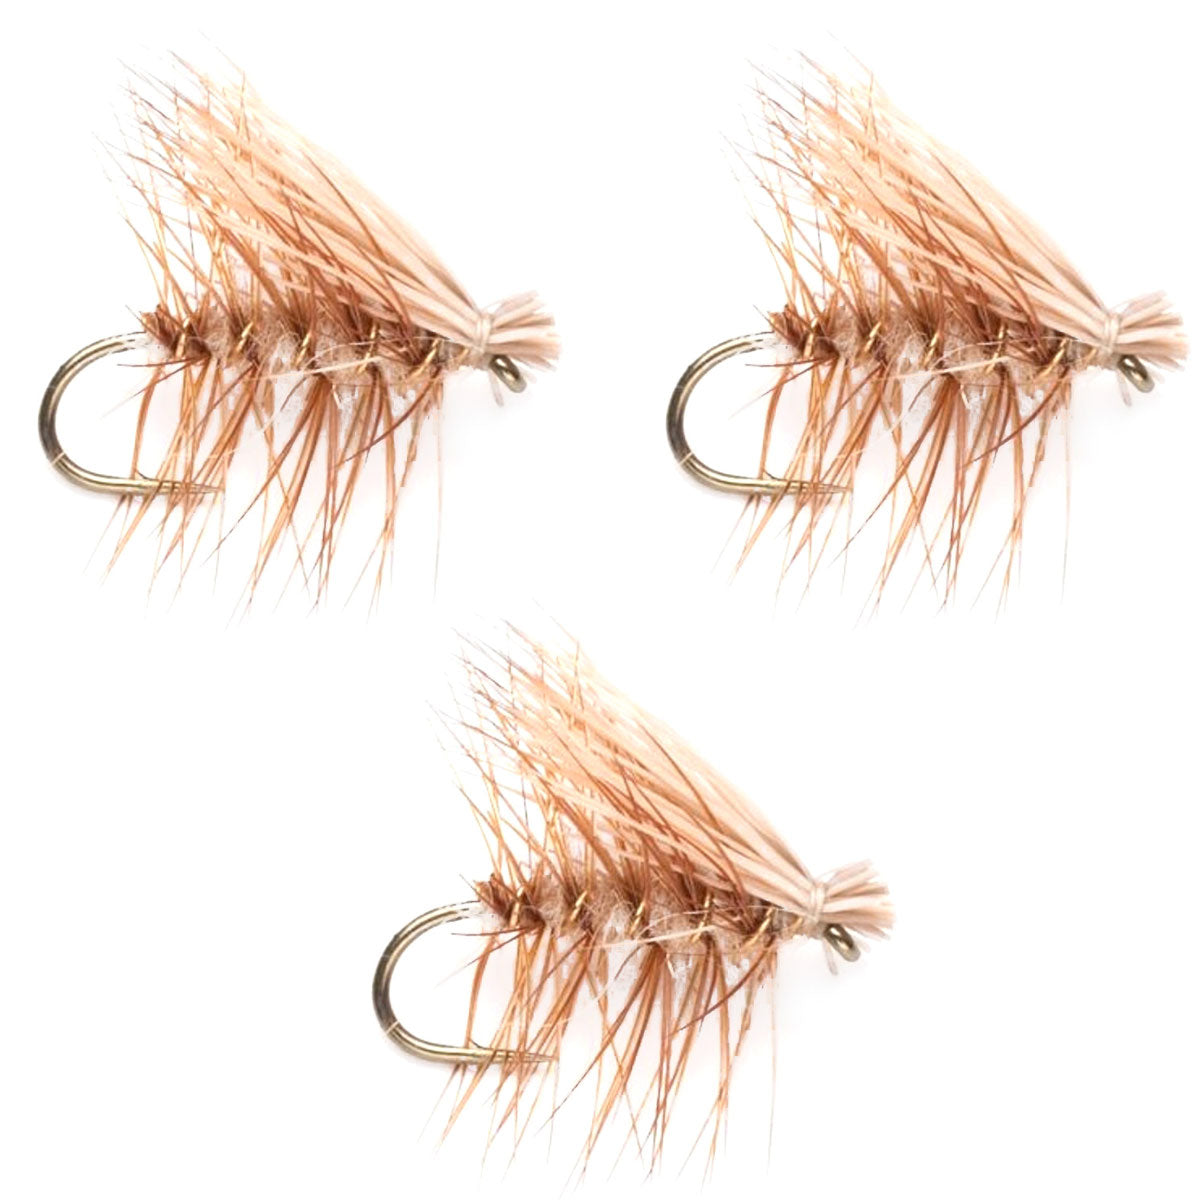 Paquete de 3 moscas secas para trucha Caddis Classic de pelo de alce, tamaño 14